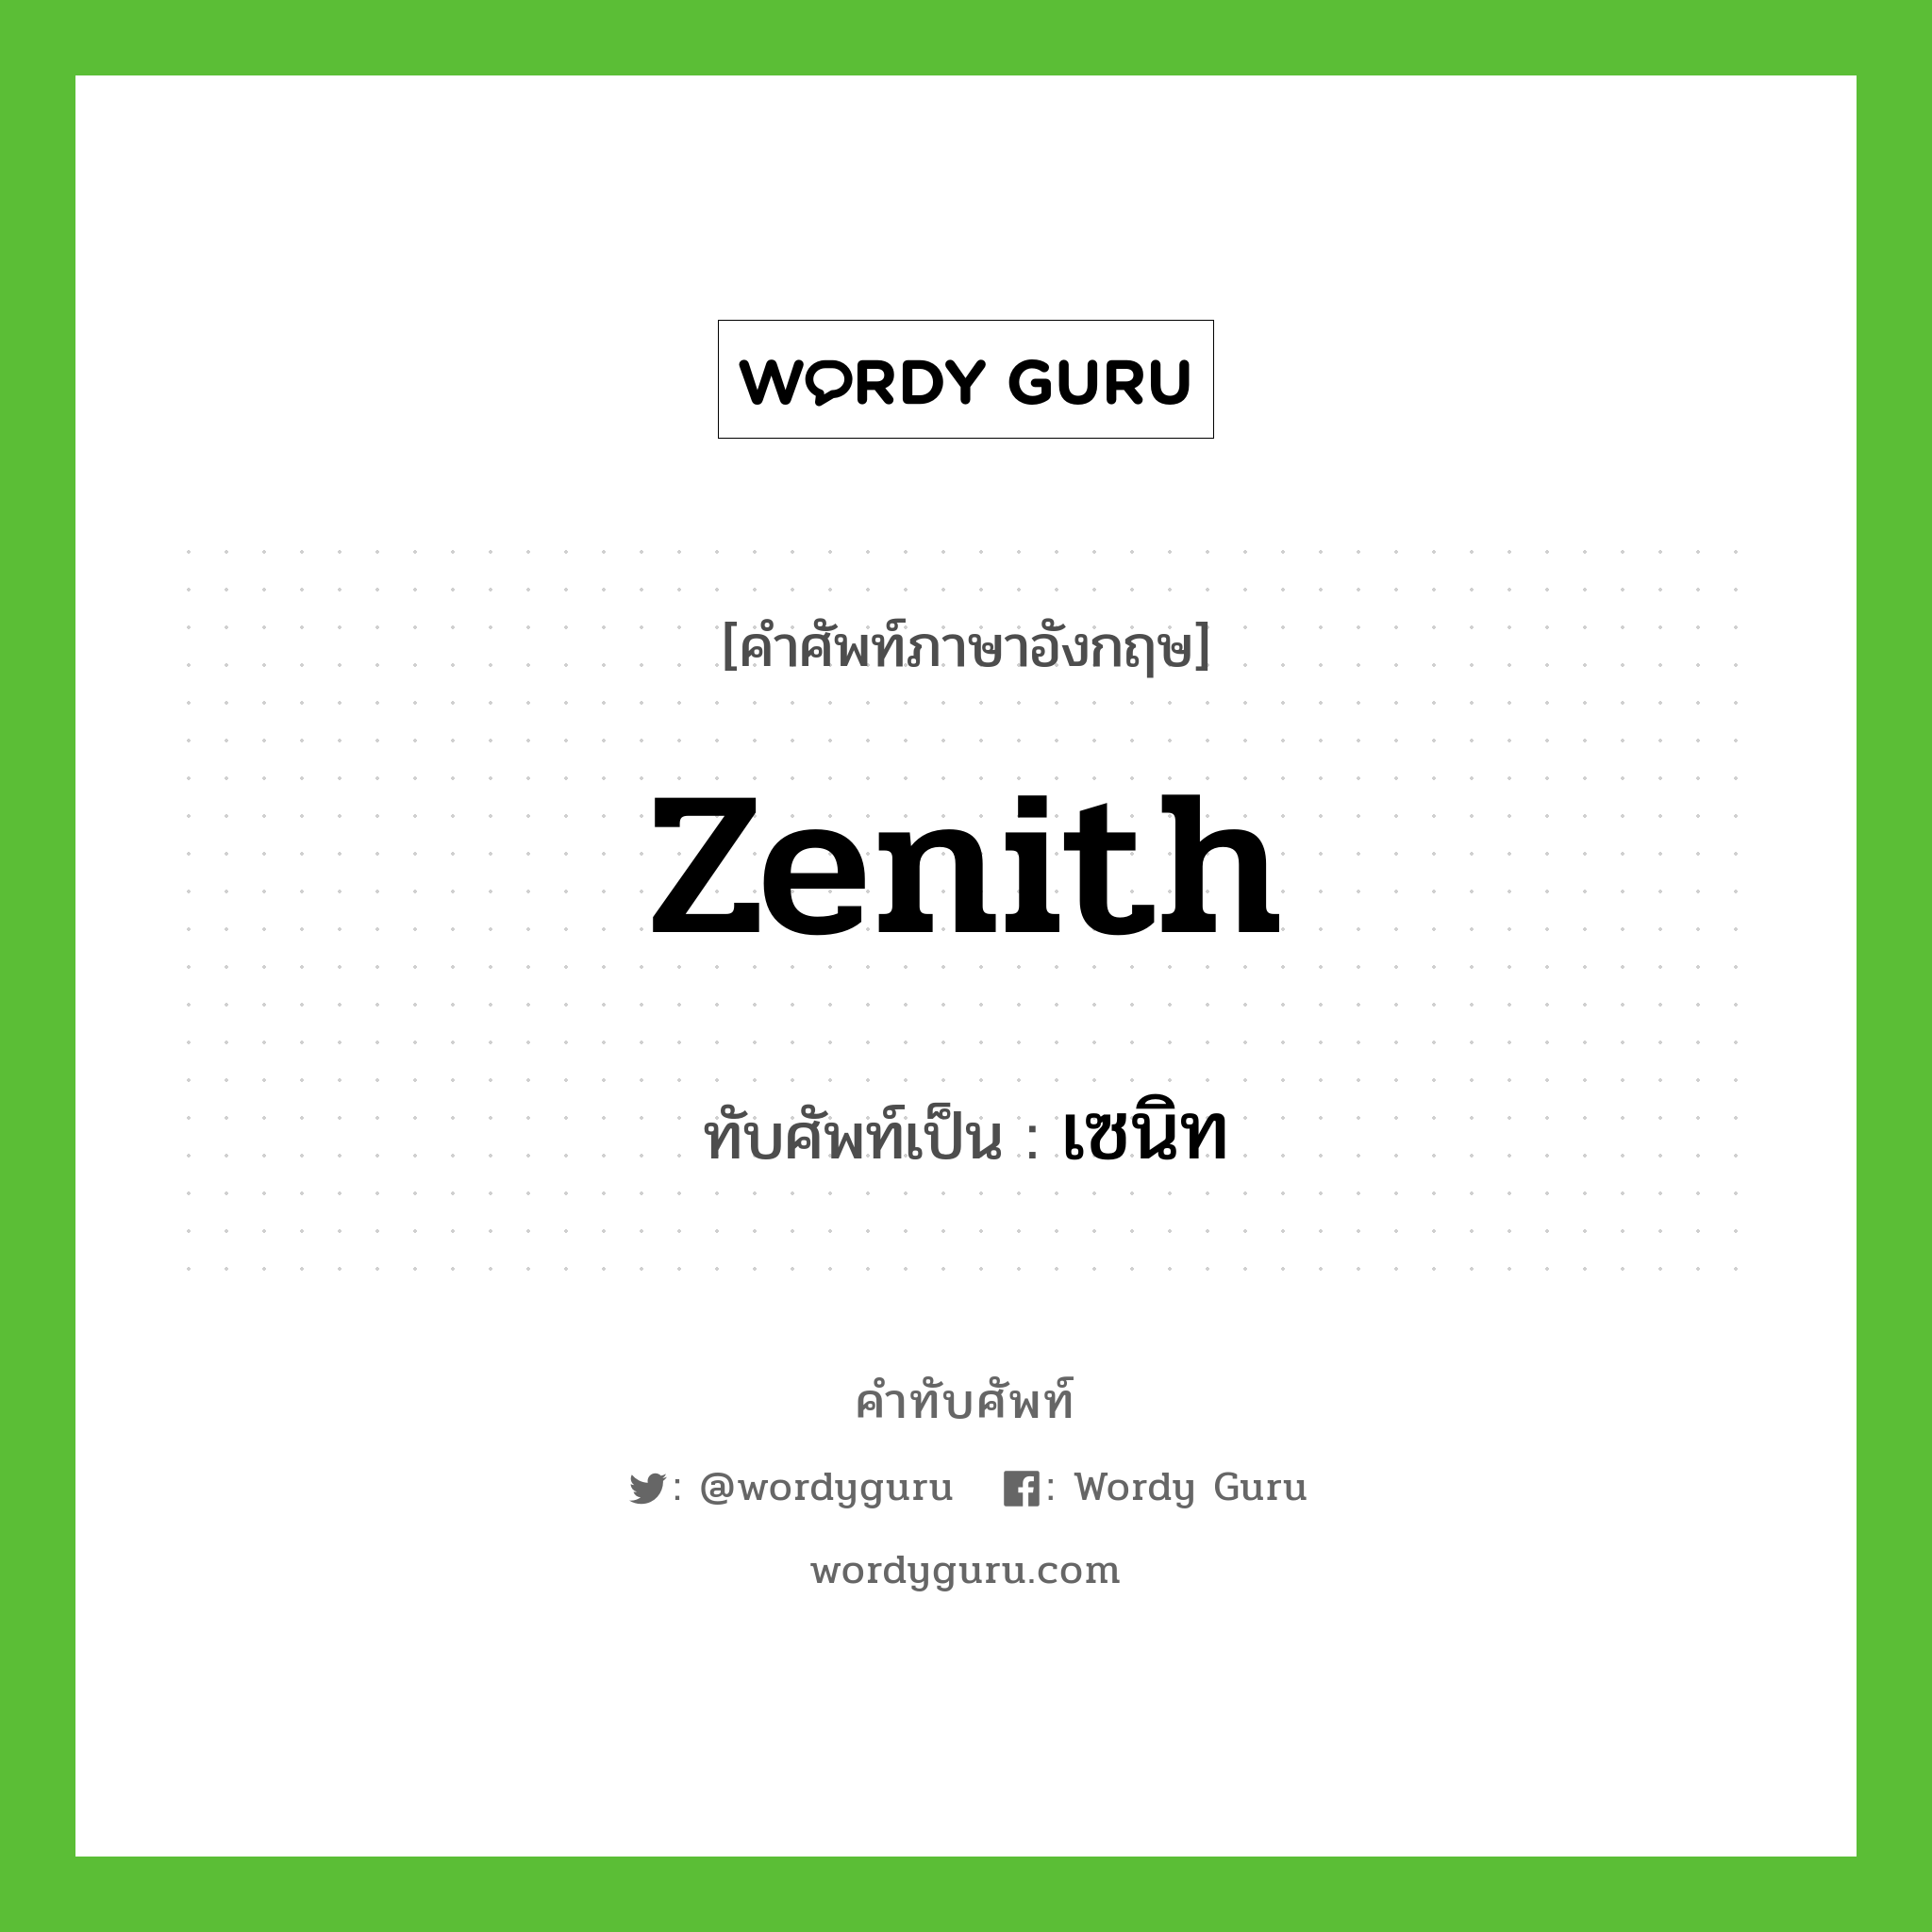 zenith เขียนเป็นคำไทยว่าอะไร?, คำศัพท์ภาษาอังกฤษ zenith ทับศัพท์เป็น เซนิท